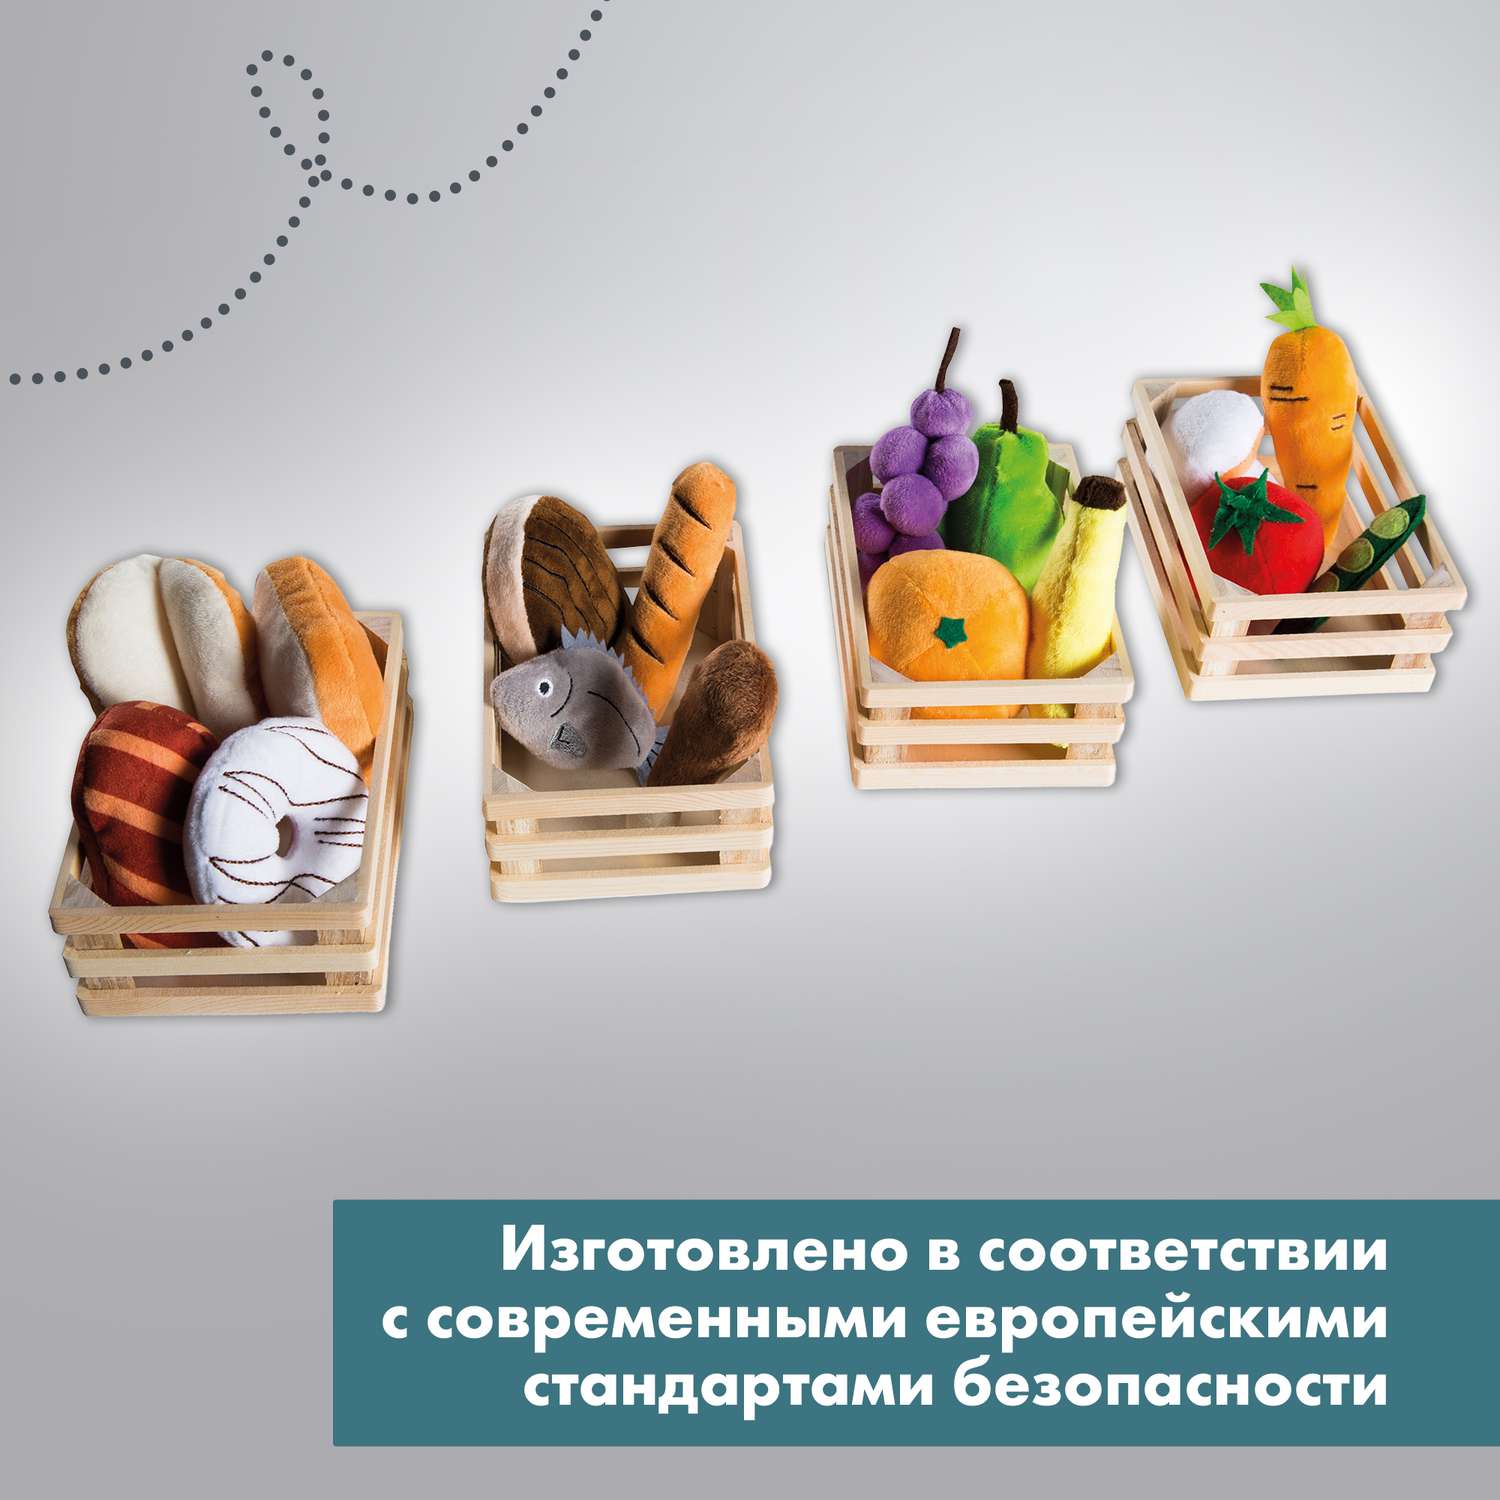 Набор плюшевых продуктов Roba игровой для детского магазина или кухни 98145 - фото 14